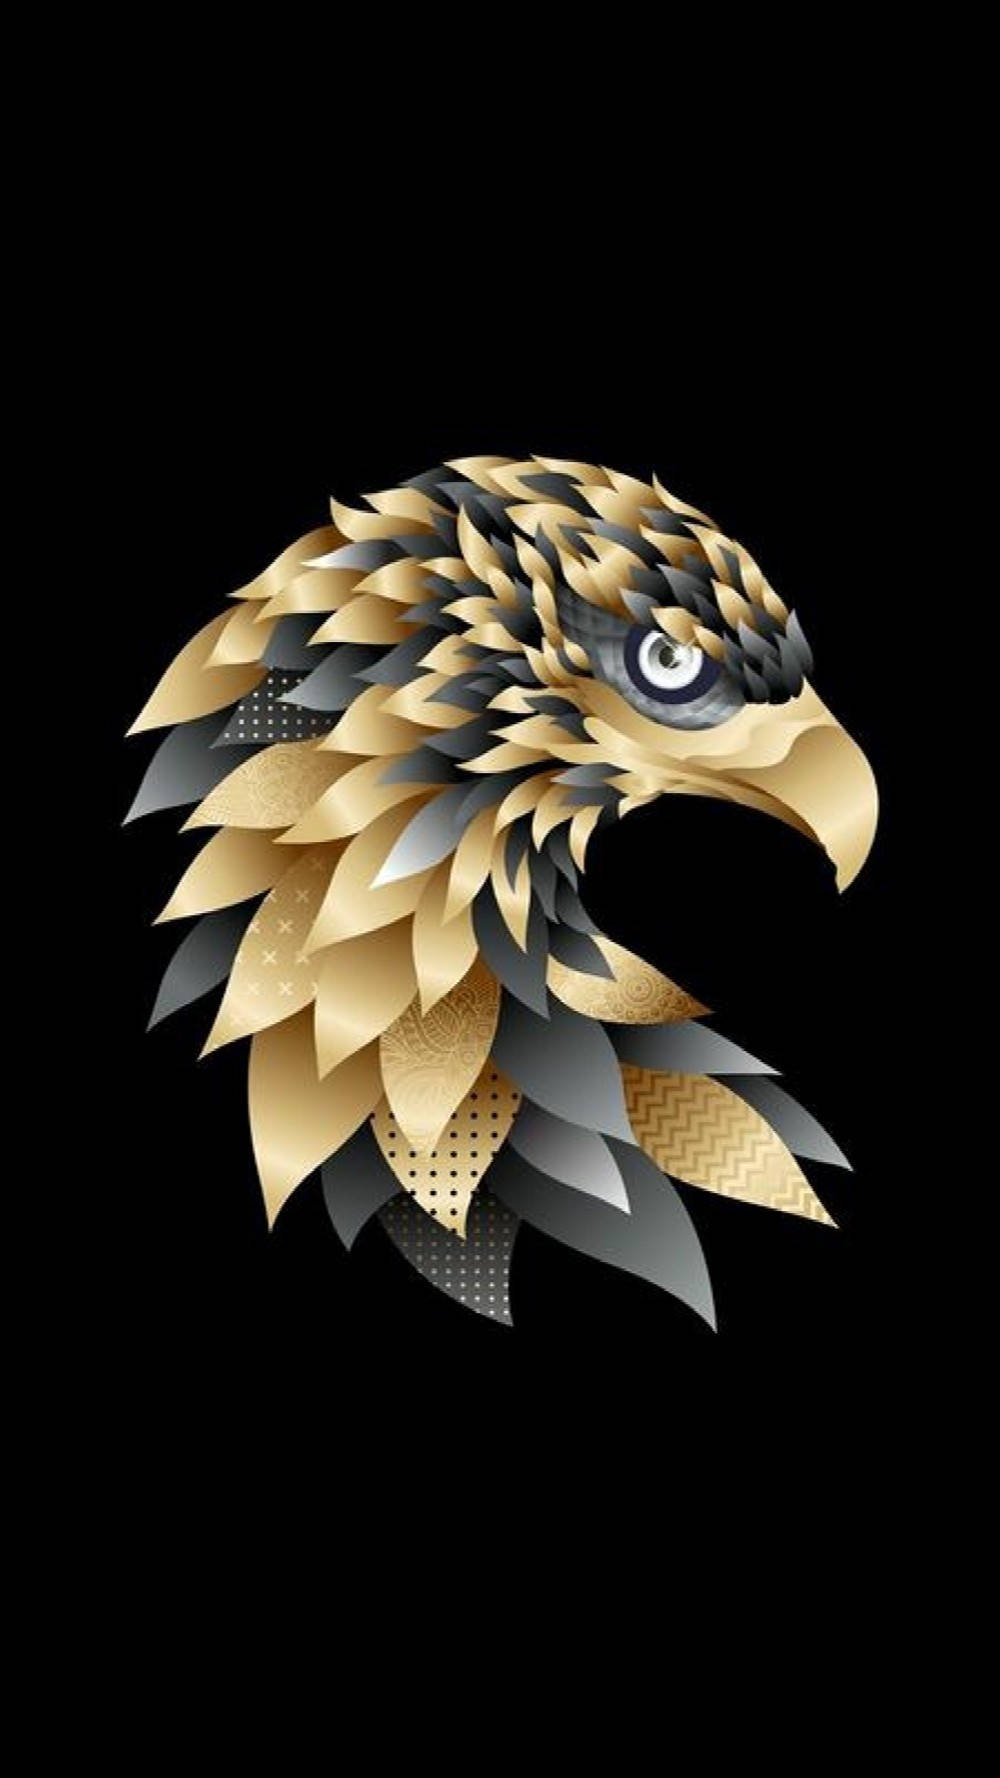 Artegeometrica Aguila In Colori Oro E Nero Sfondo